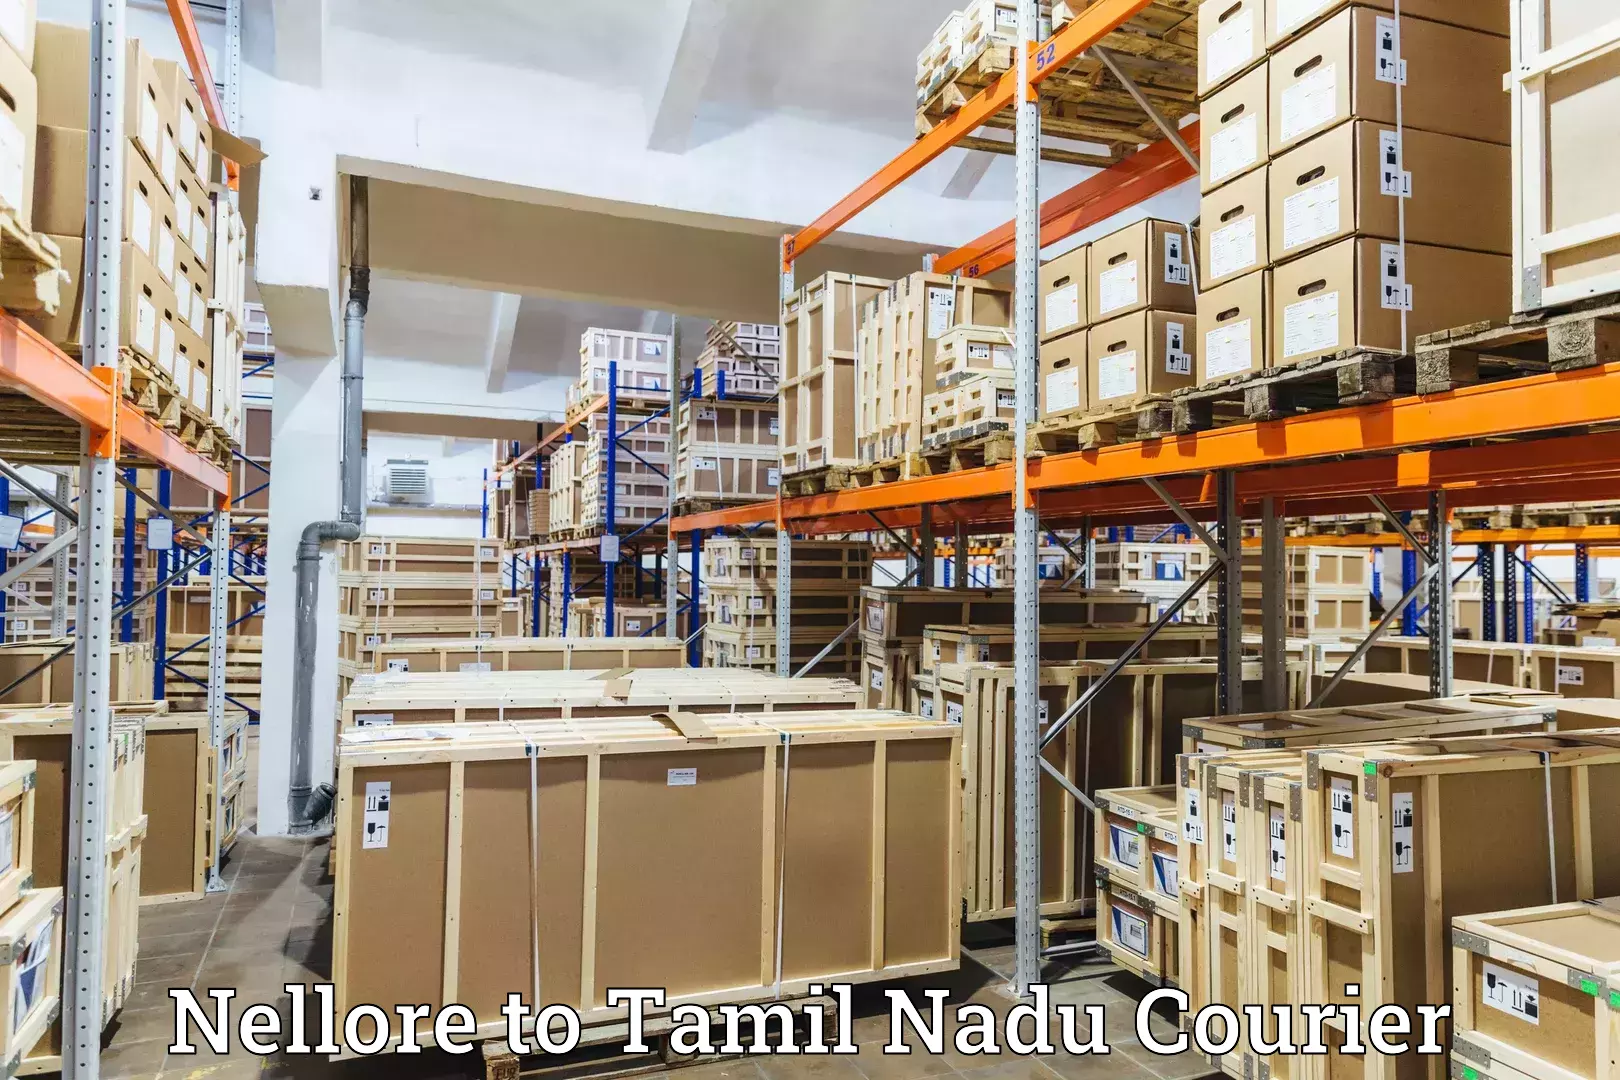 Fast delivery service Nellore to Chennai Port